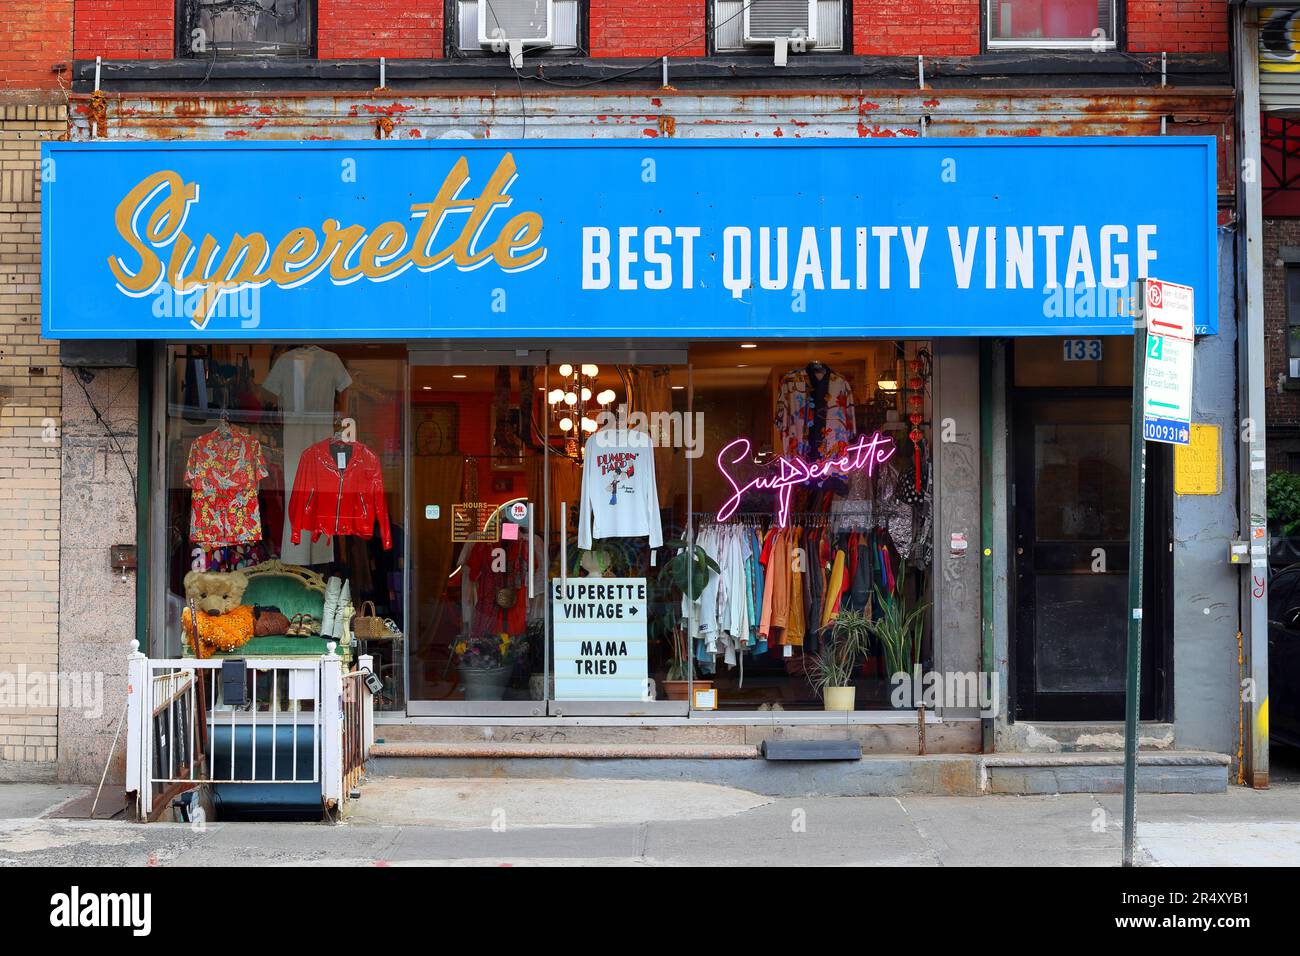 Superette Best Quality Vintage, 133 e Broadway, New York, NYC foto di un fiorente negozio a Chinatown/Lower East Side di Manhattan. Foto Stock